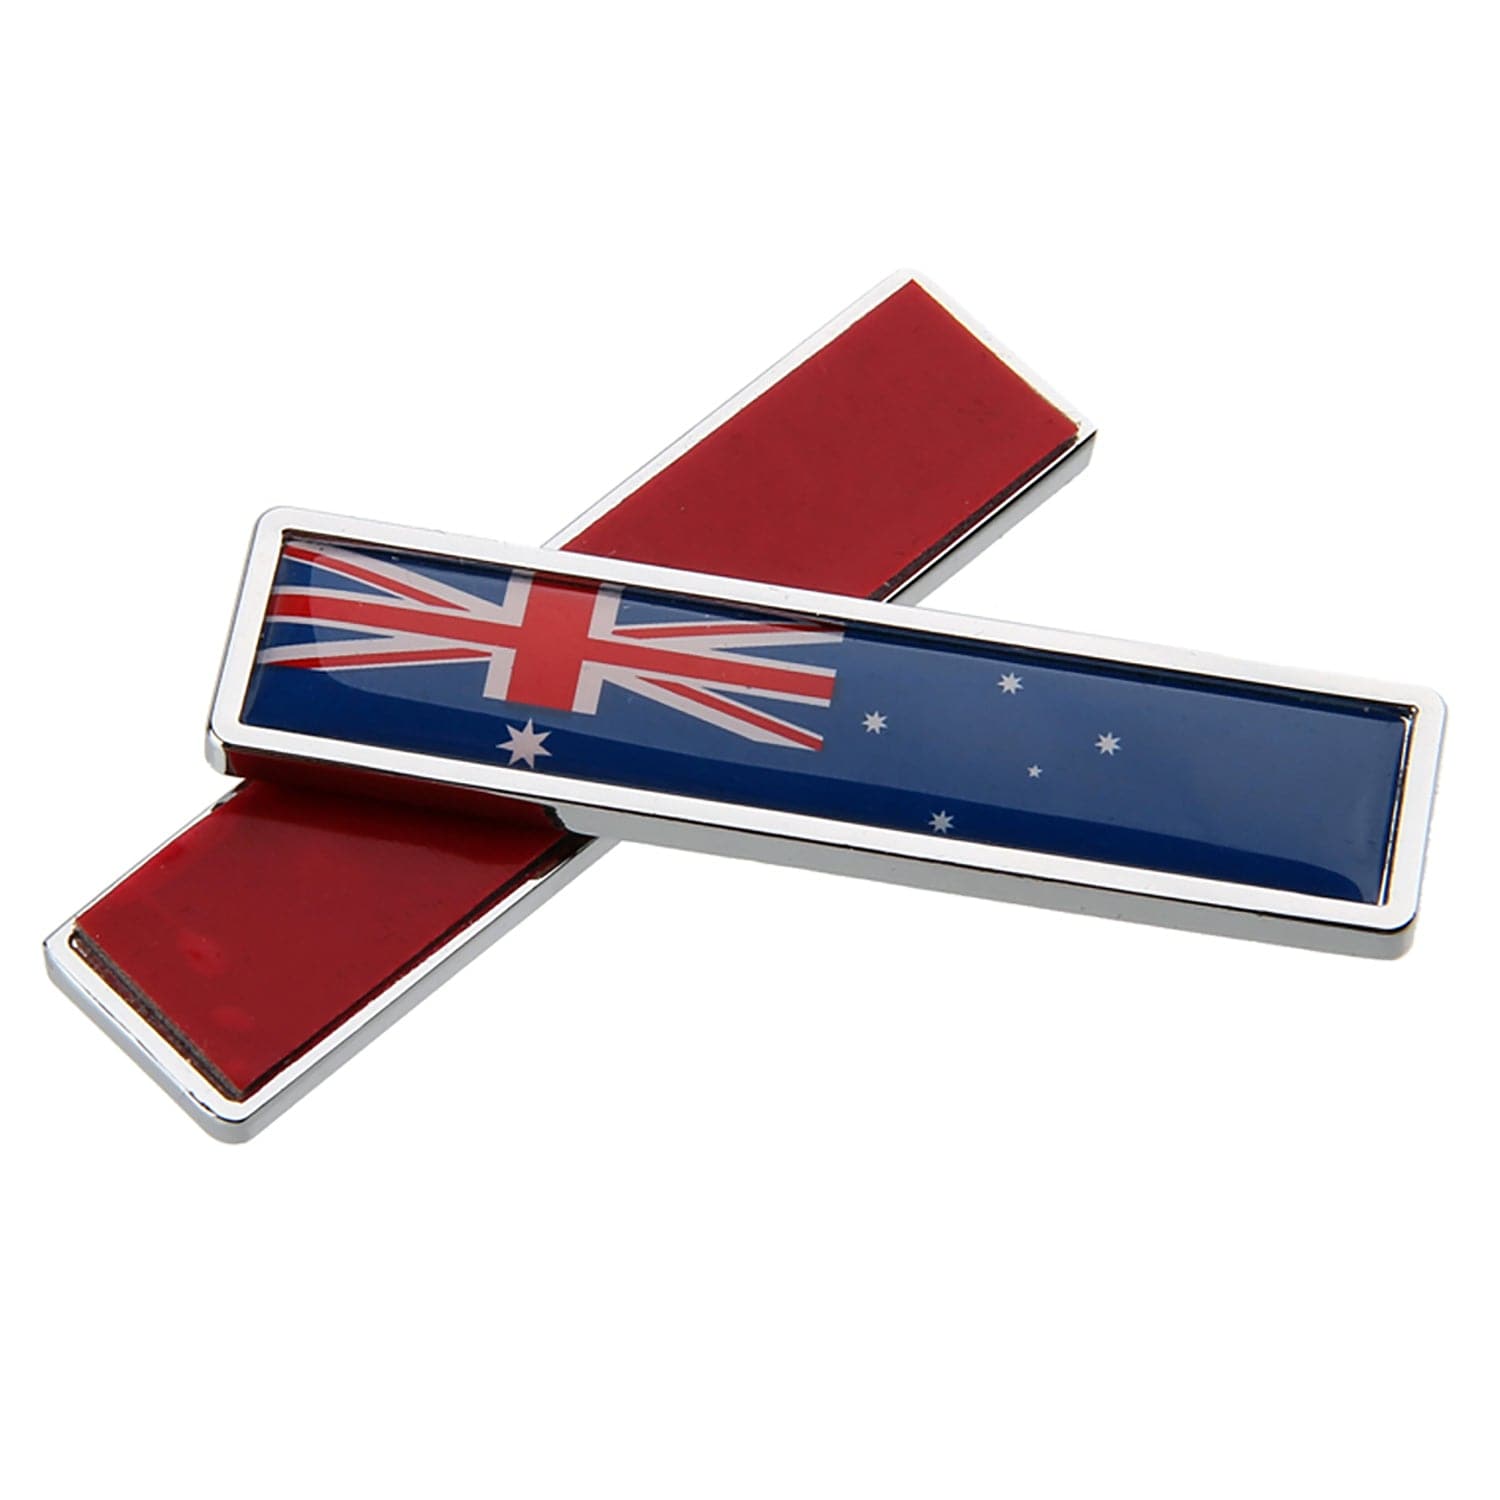 AUSTRALIAN FLAG BADGES